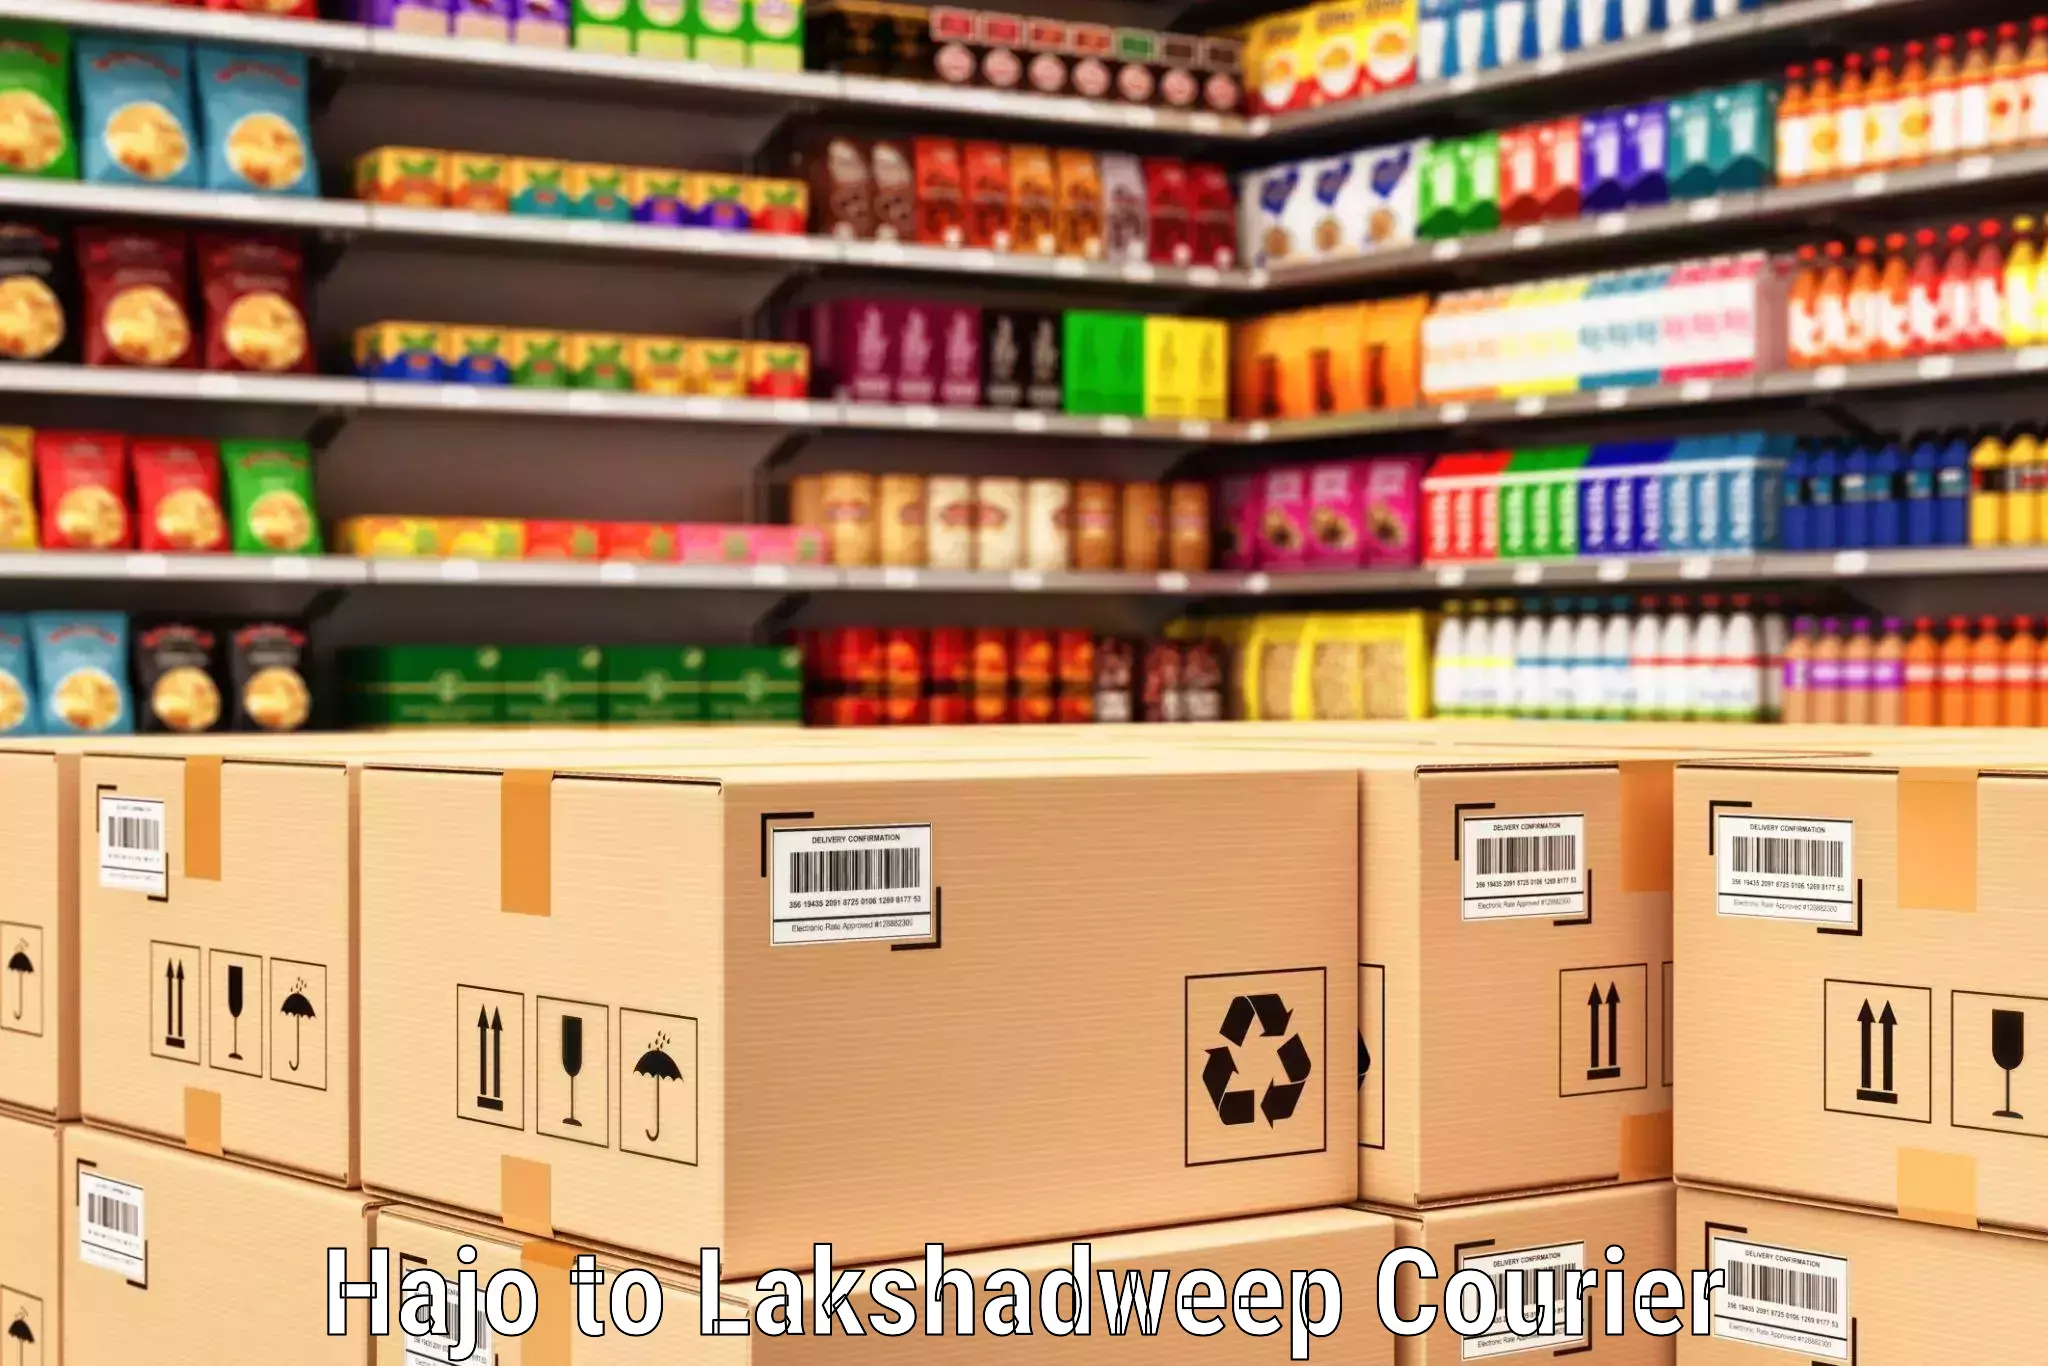 Custom courier packaging in Hajo to Lakshadweep